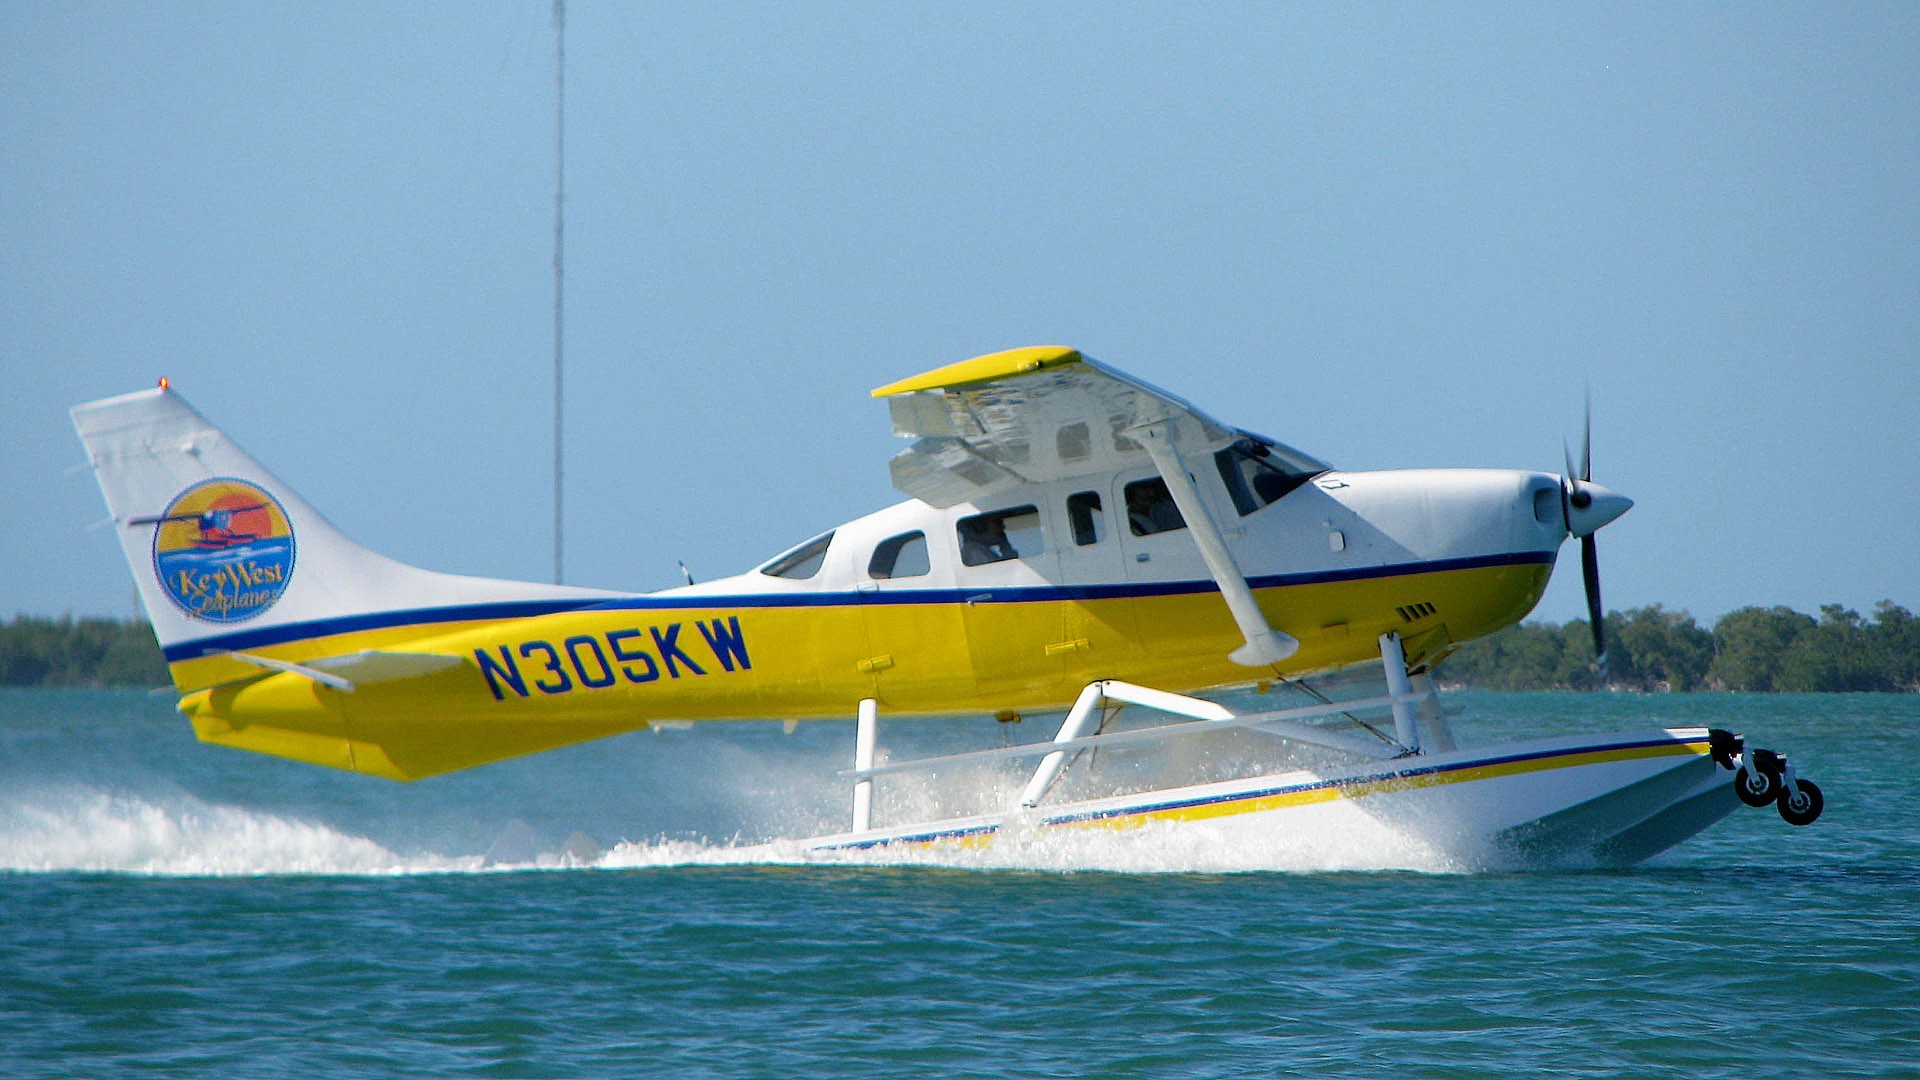 Seaplanes Of Key West Wallpaper